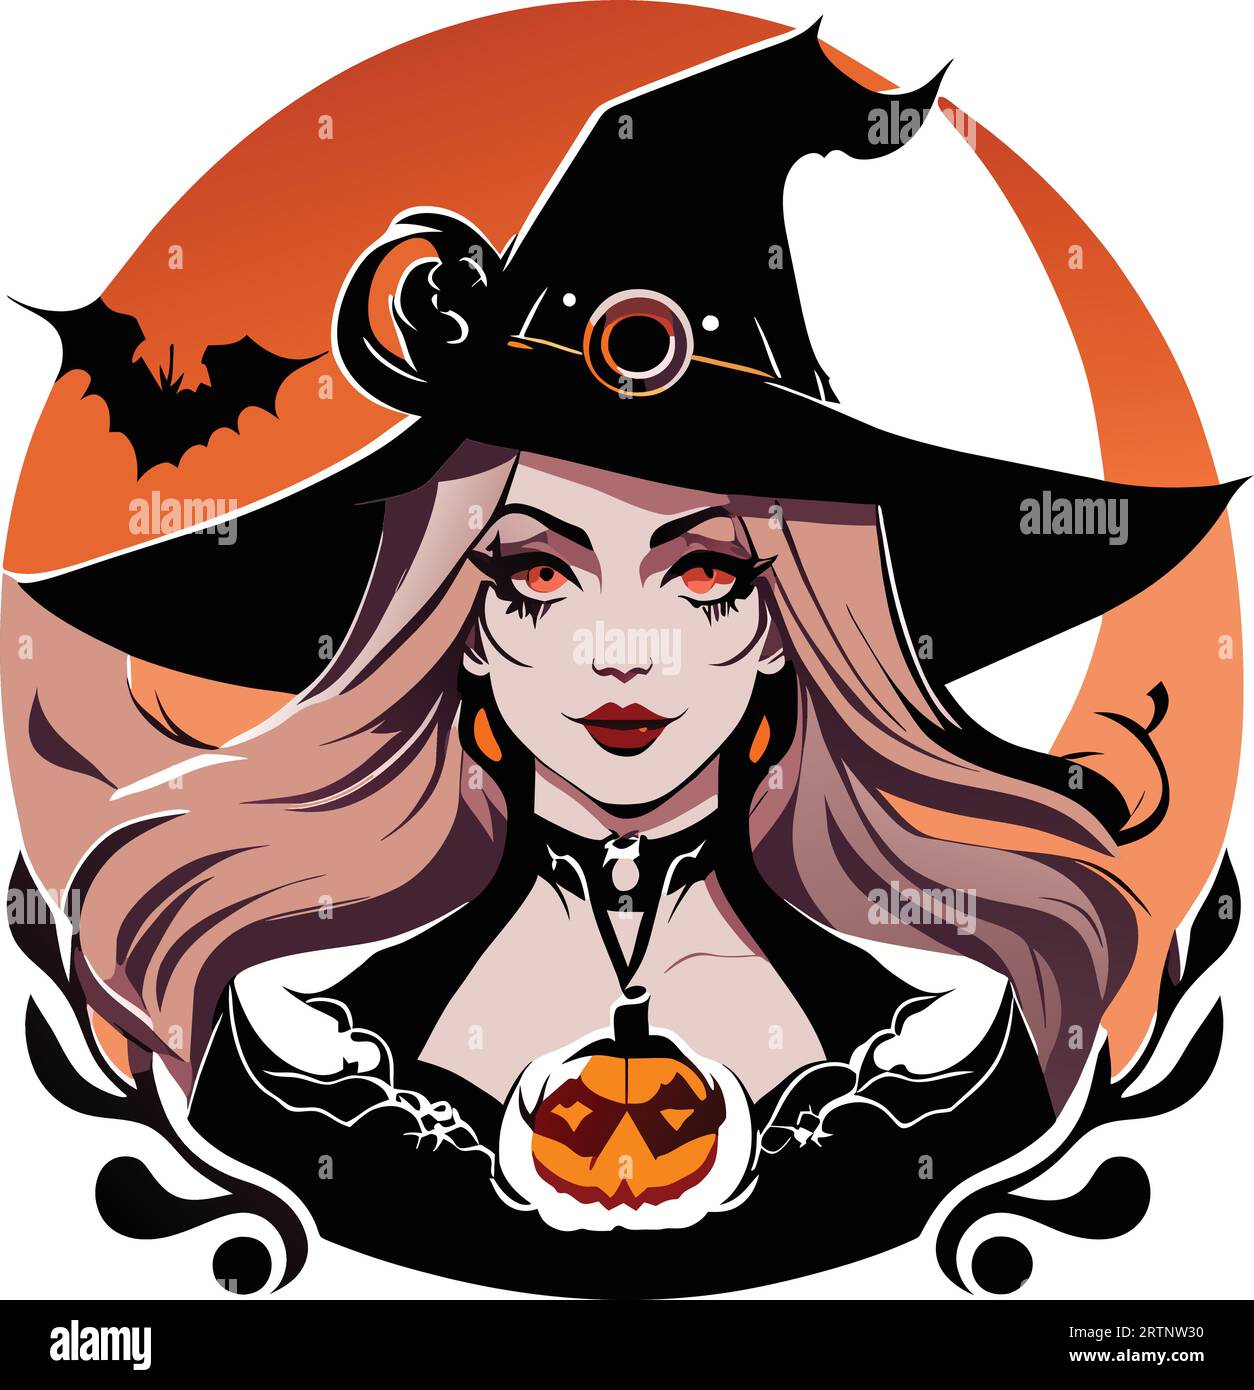 Capturez la magie d'Halloween avec ce vecteur de sorcière captivant. Parfait pour les motifs effrayants Illustration de Vecteur